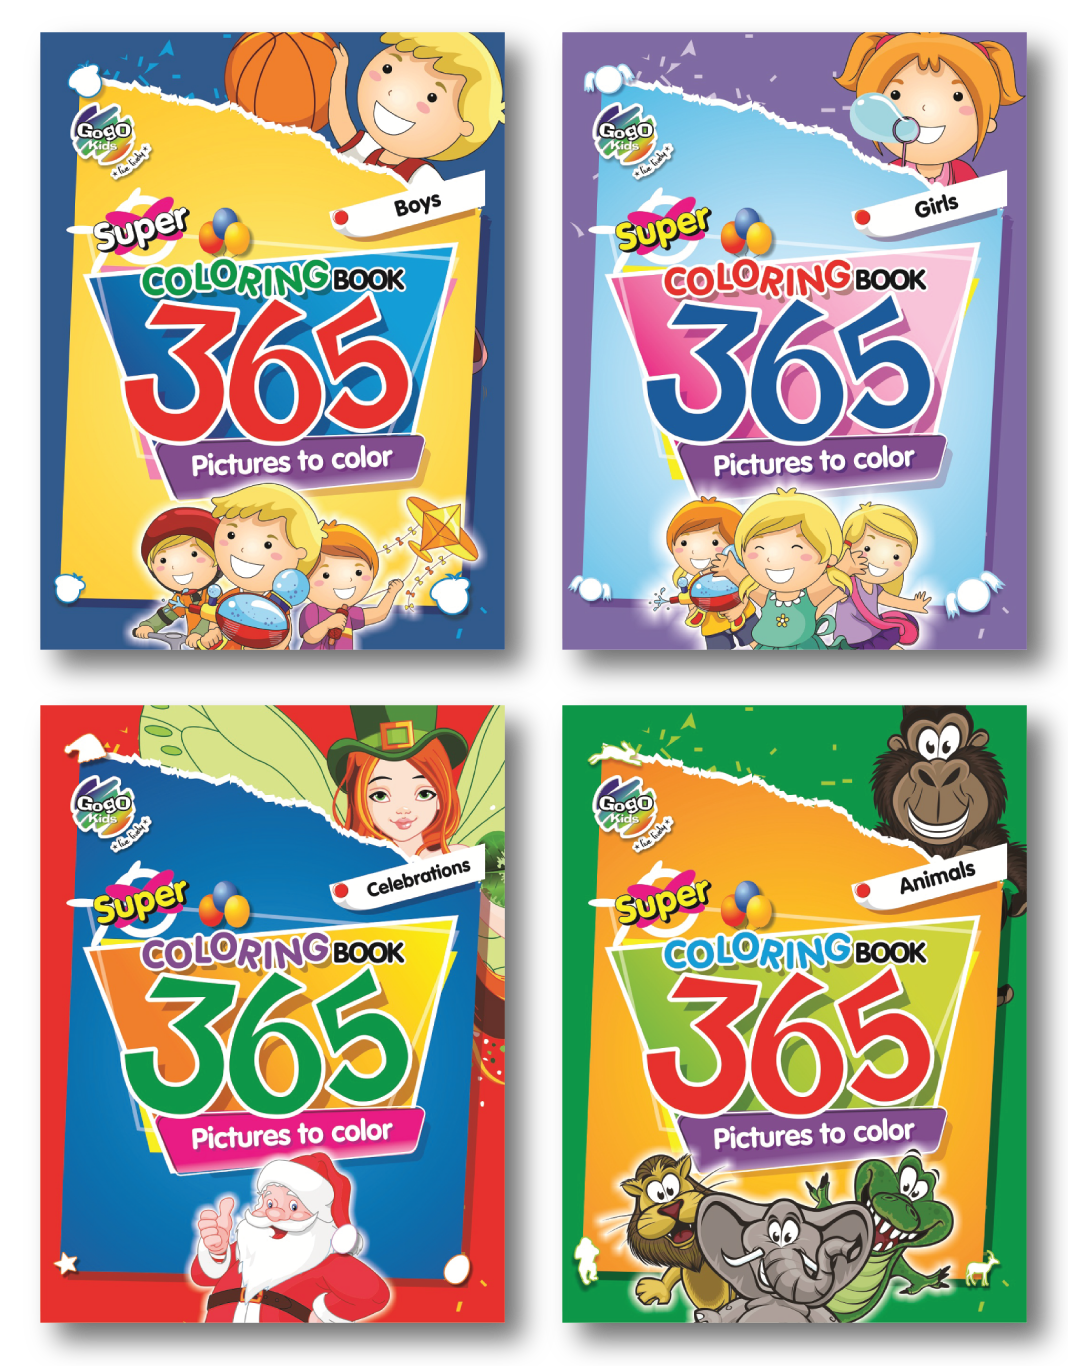 Gogo Kids Super Coloring Book 365 picture